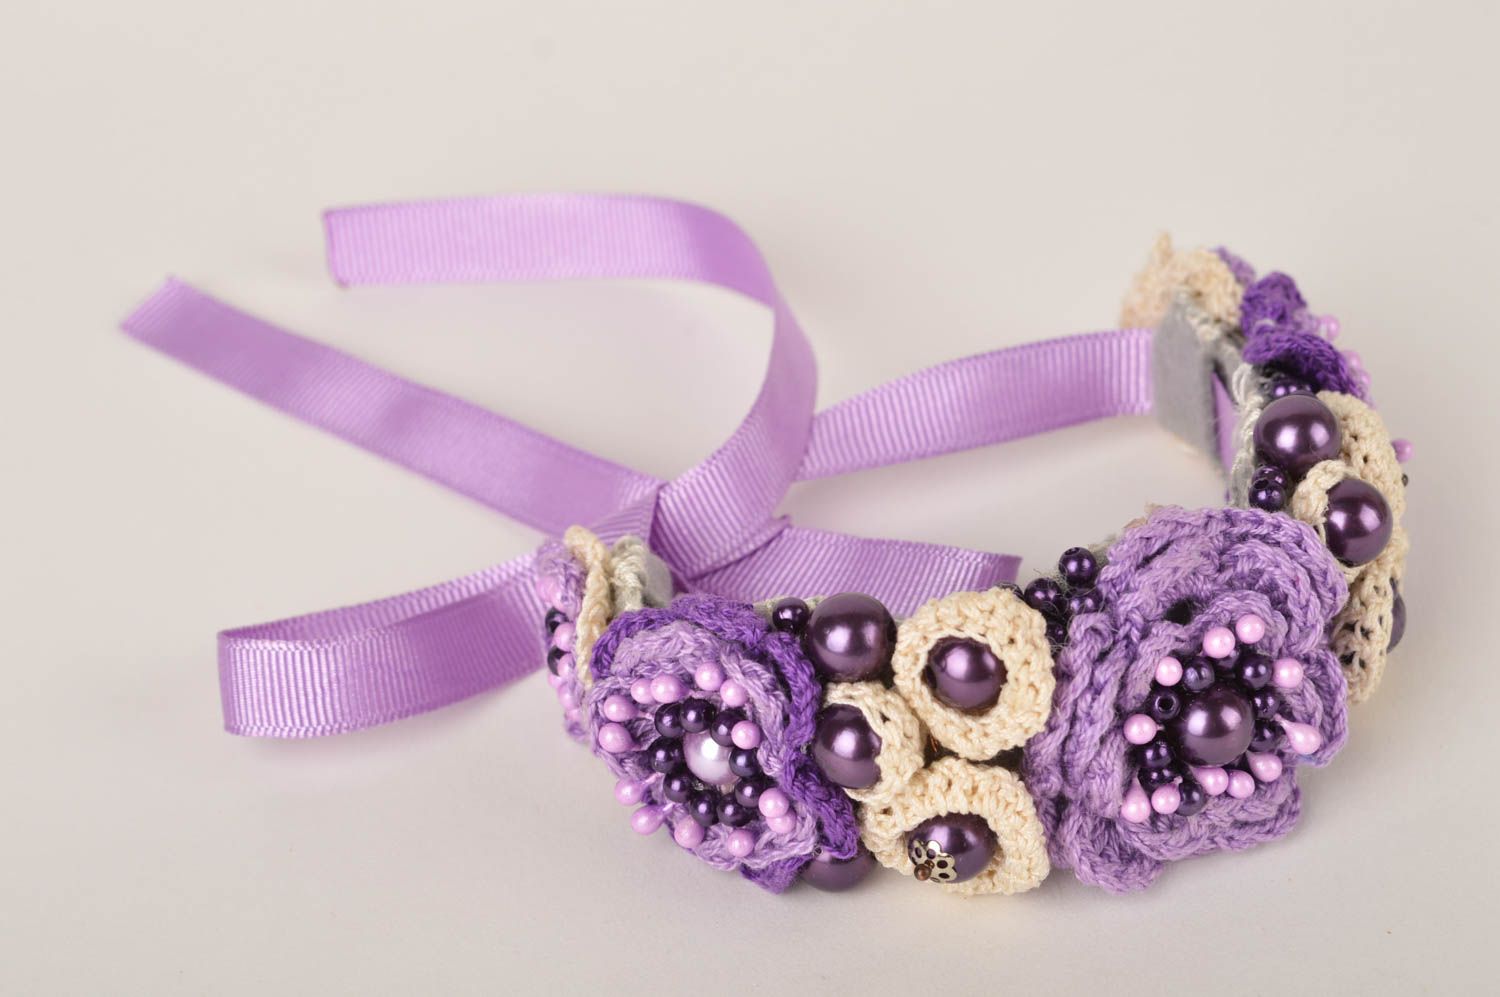 Unusual handmade wrist bracelet designs flower bracelet crochet ideas gift ideas photo 3